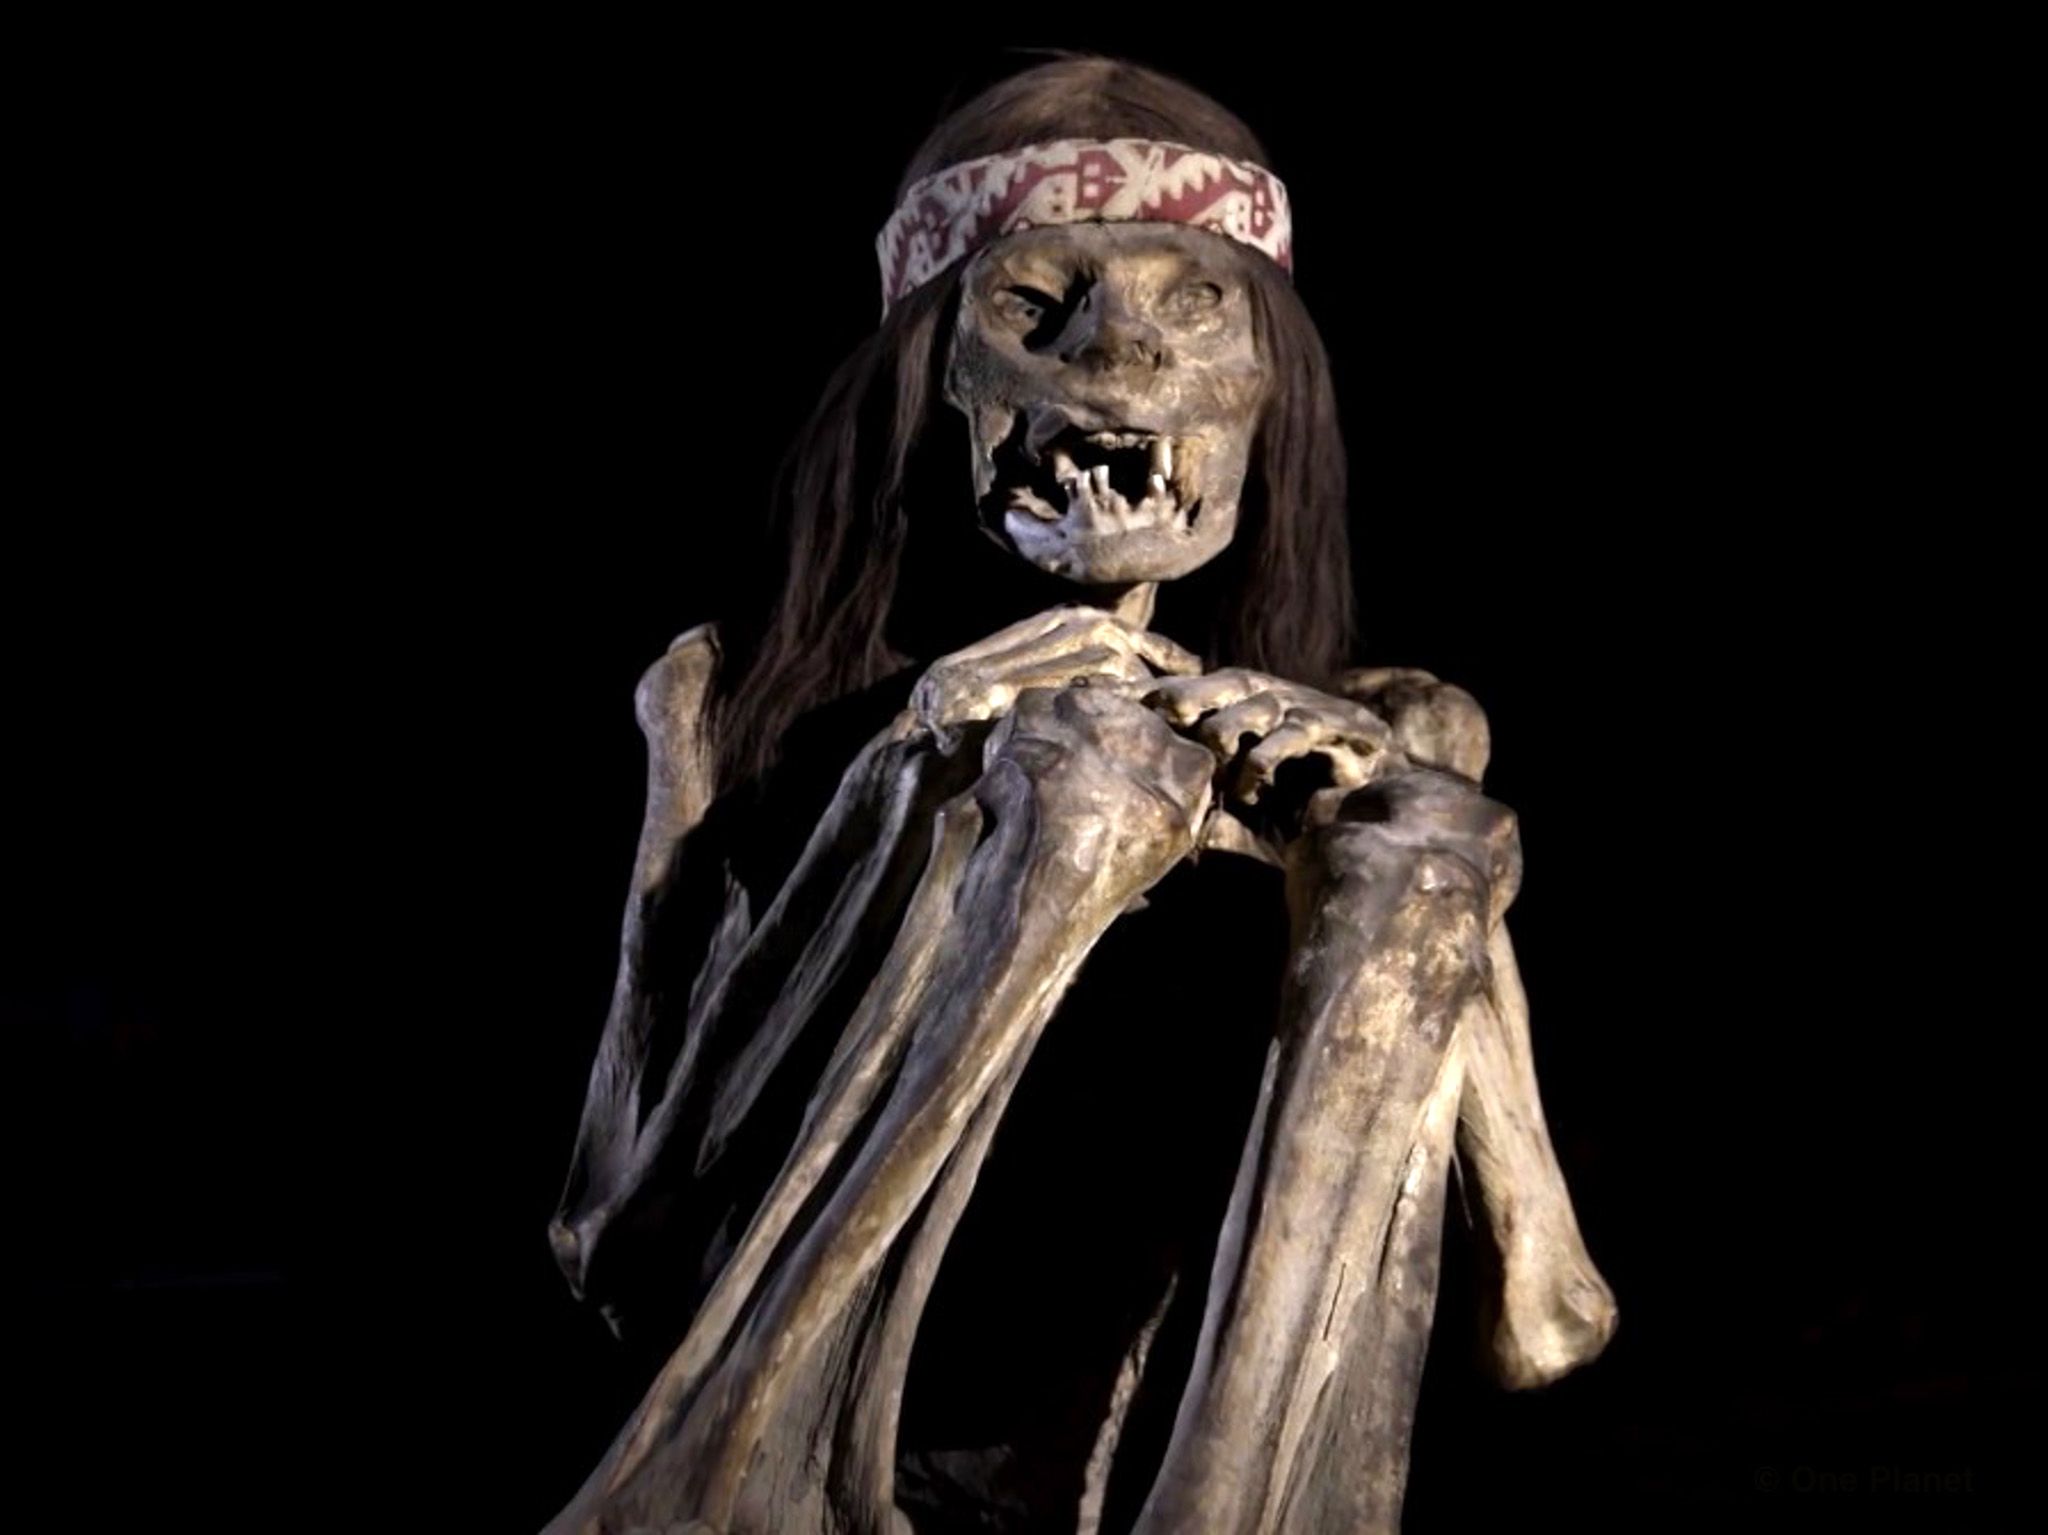 مومياء محفوظة في متحف إيكا الإقليمي في بيرو. هذه... [Photo of the day - سبتمبر 2019]